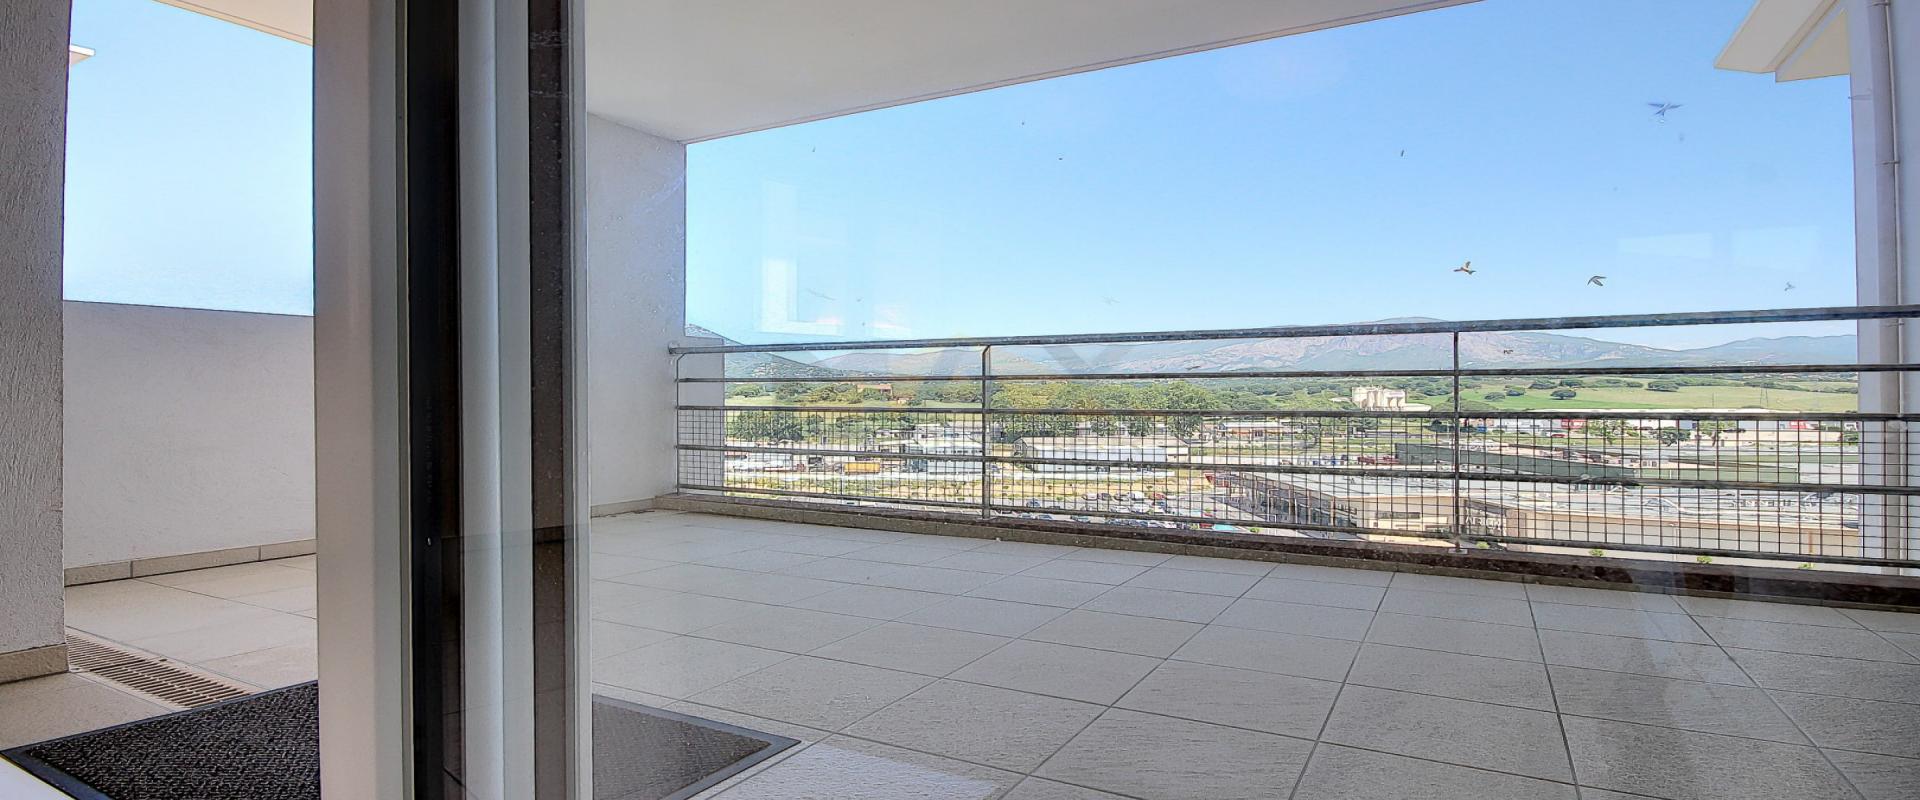 En Corse, à proximité d'AJACCIO, à SARROLA CARCOPINO, vente d'un appartement T3 de 67 m² avec terrasse de 11 m². Immeuble récent